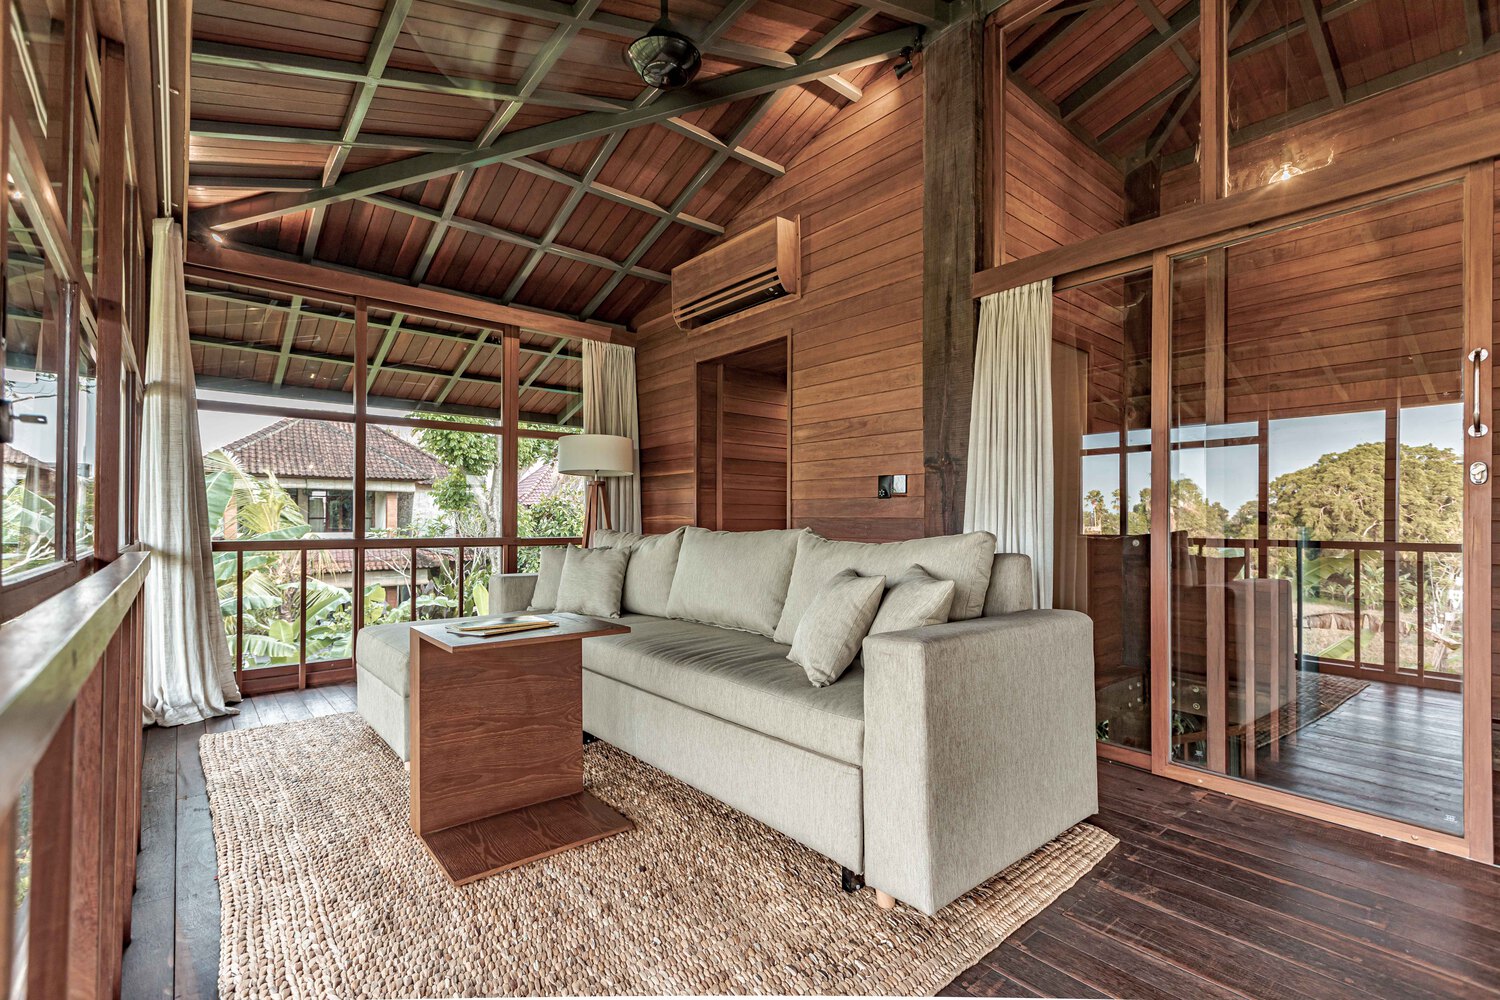 Ngôi nhà gỗ hình cái cây độc đáo ở Bali, nằm lọt thỏm giữa khu vườn nhiệt đới đầy bình yên - Ảnh 2.